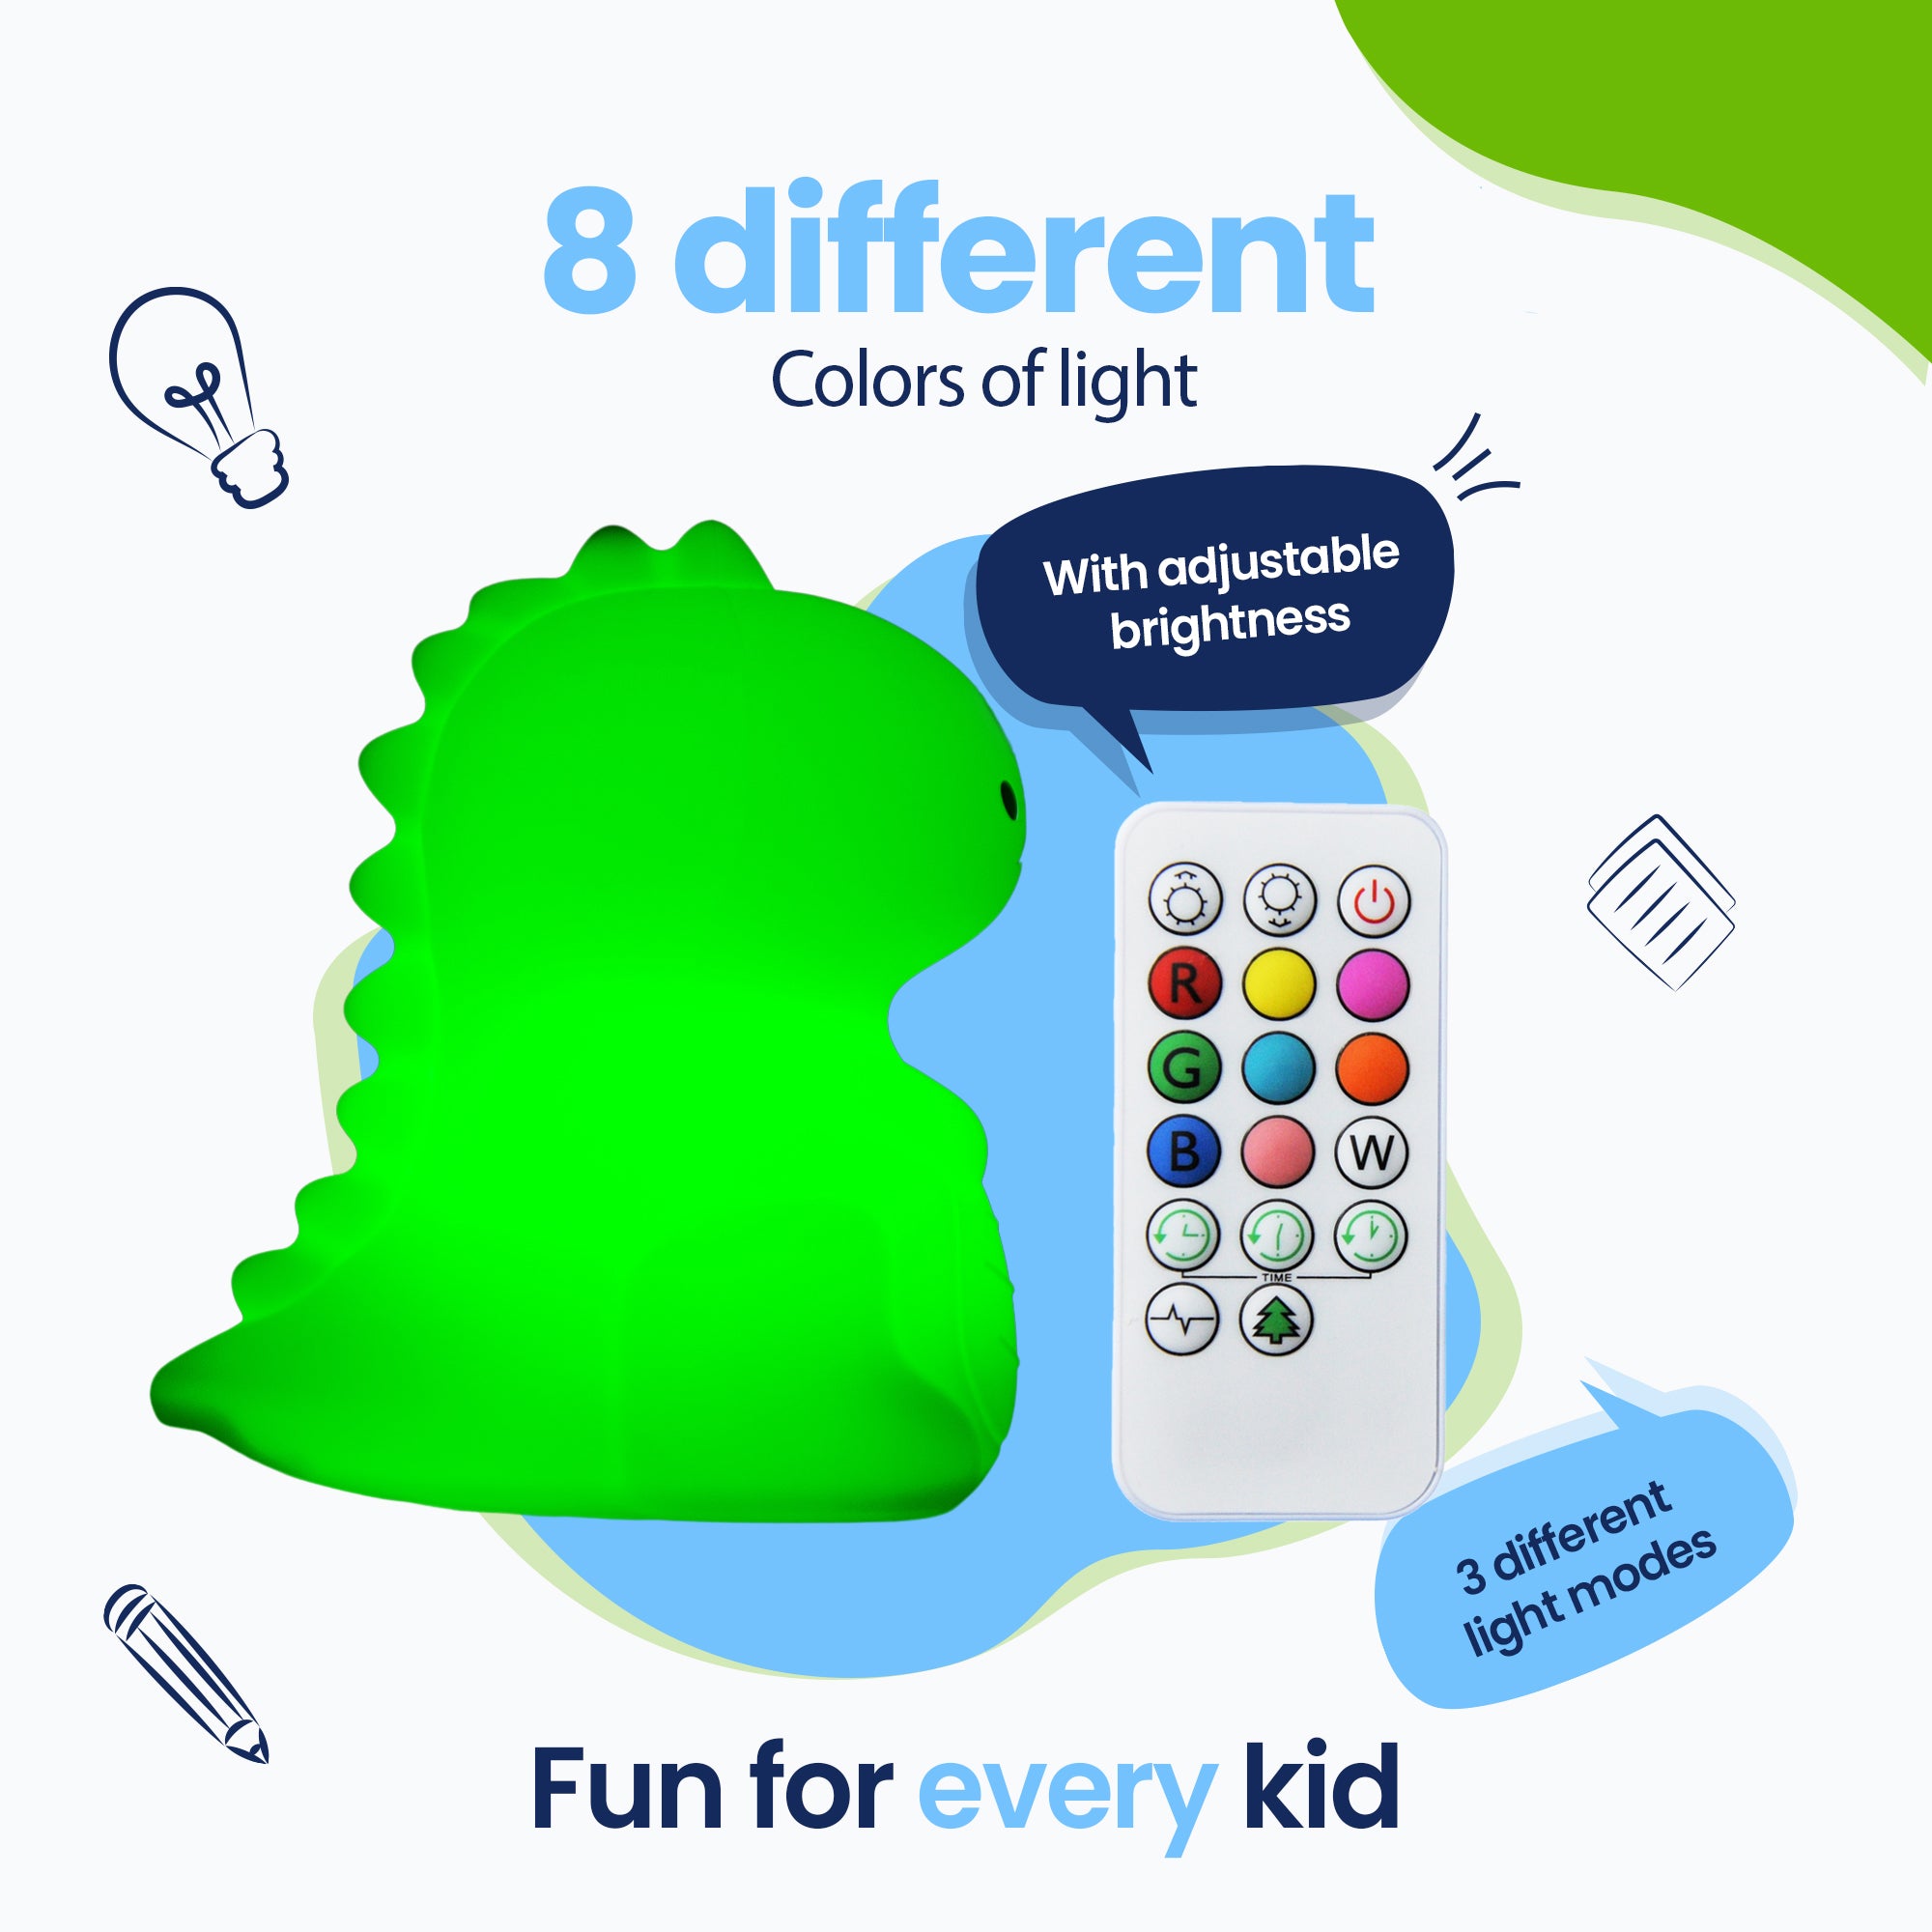 8 cores diferentes de luz - 3 modos de luz diferentes - Diversão para todas as crianças